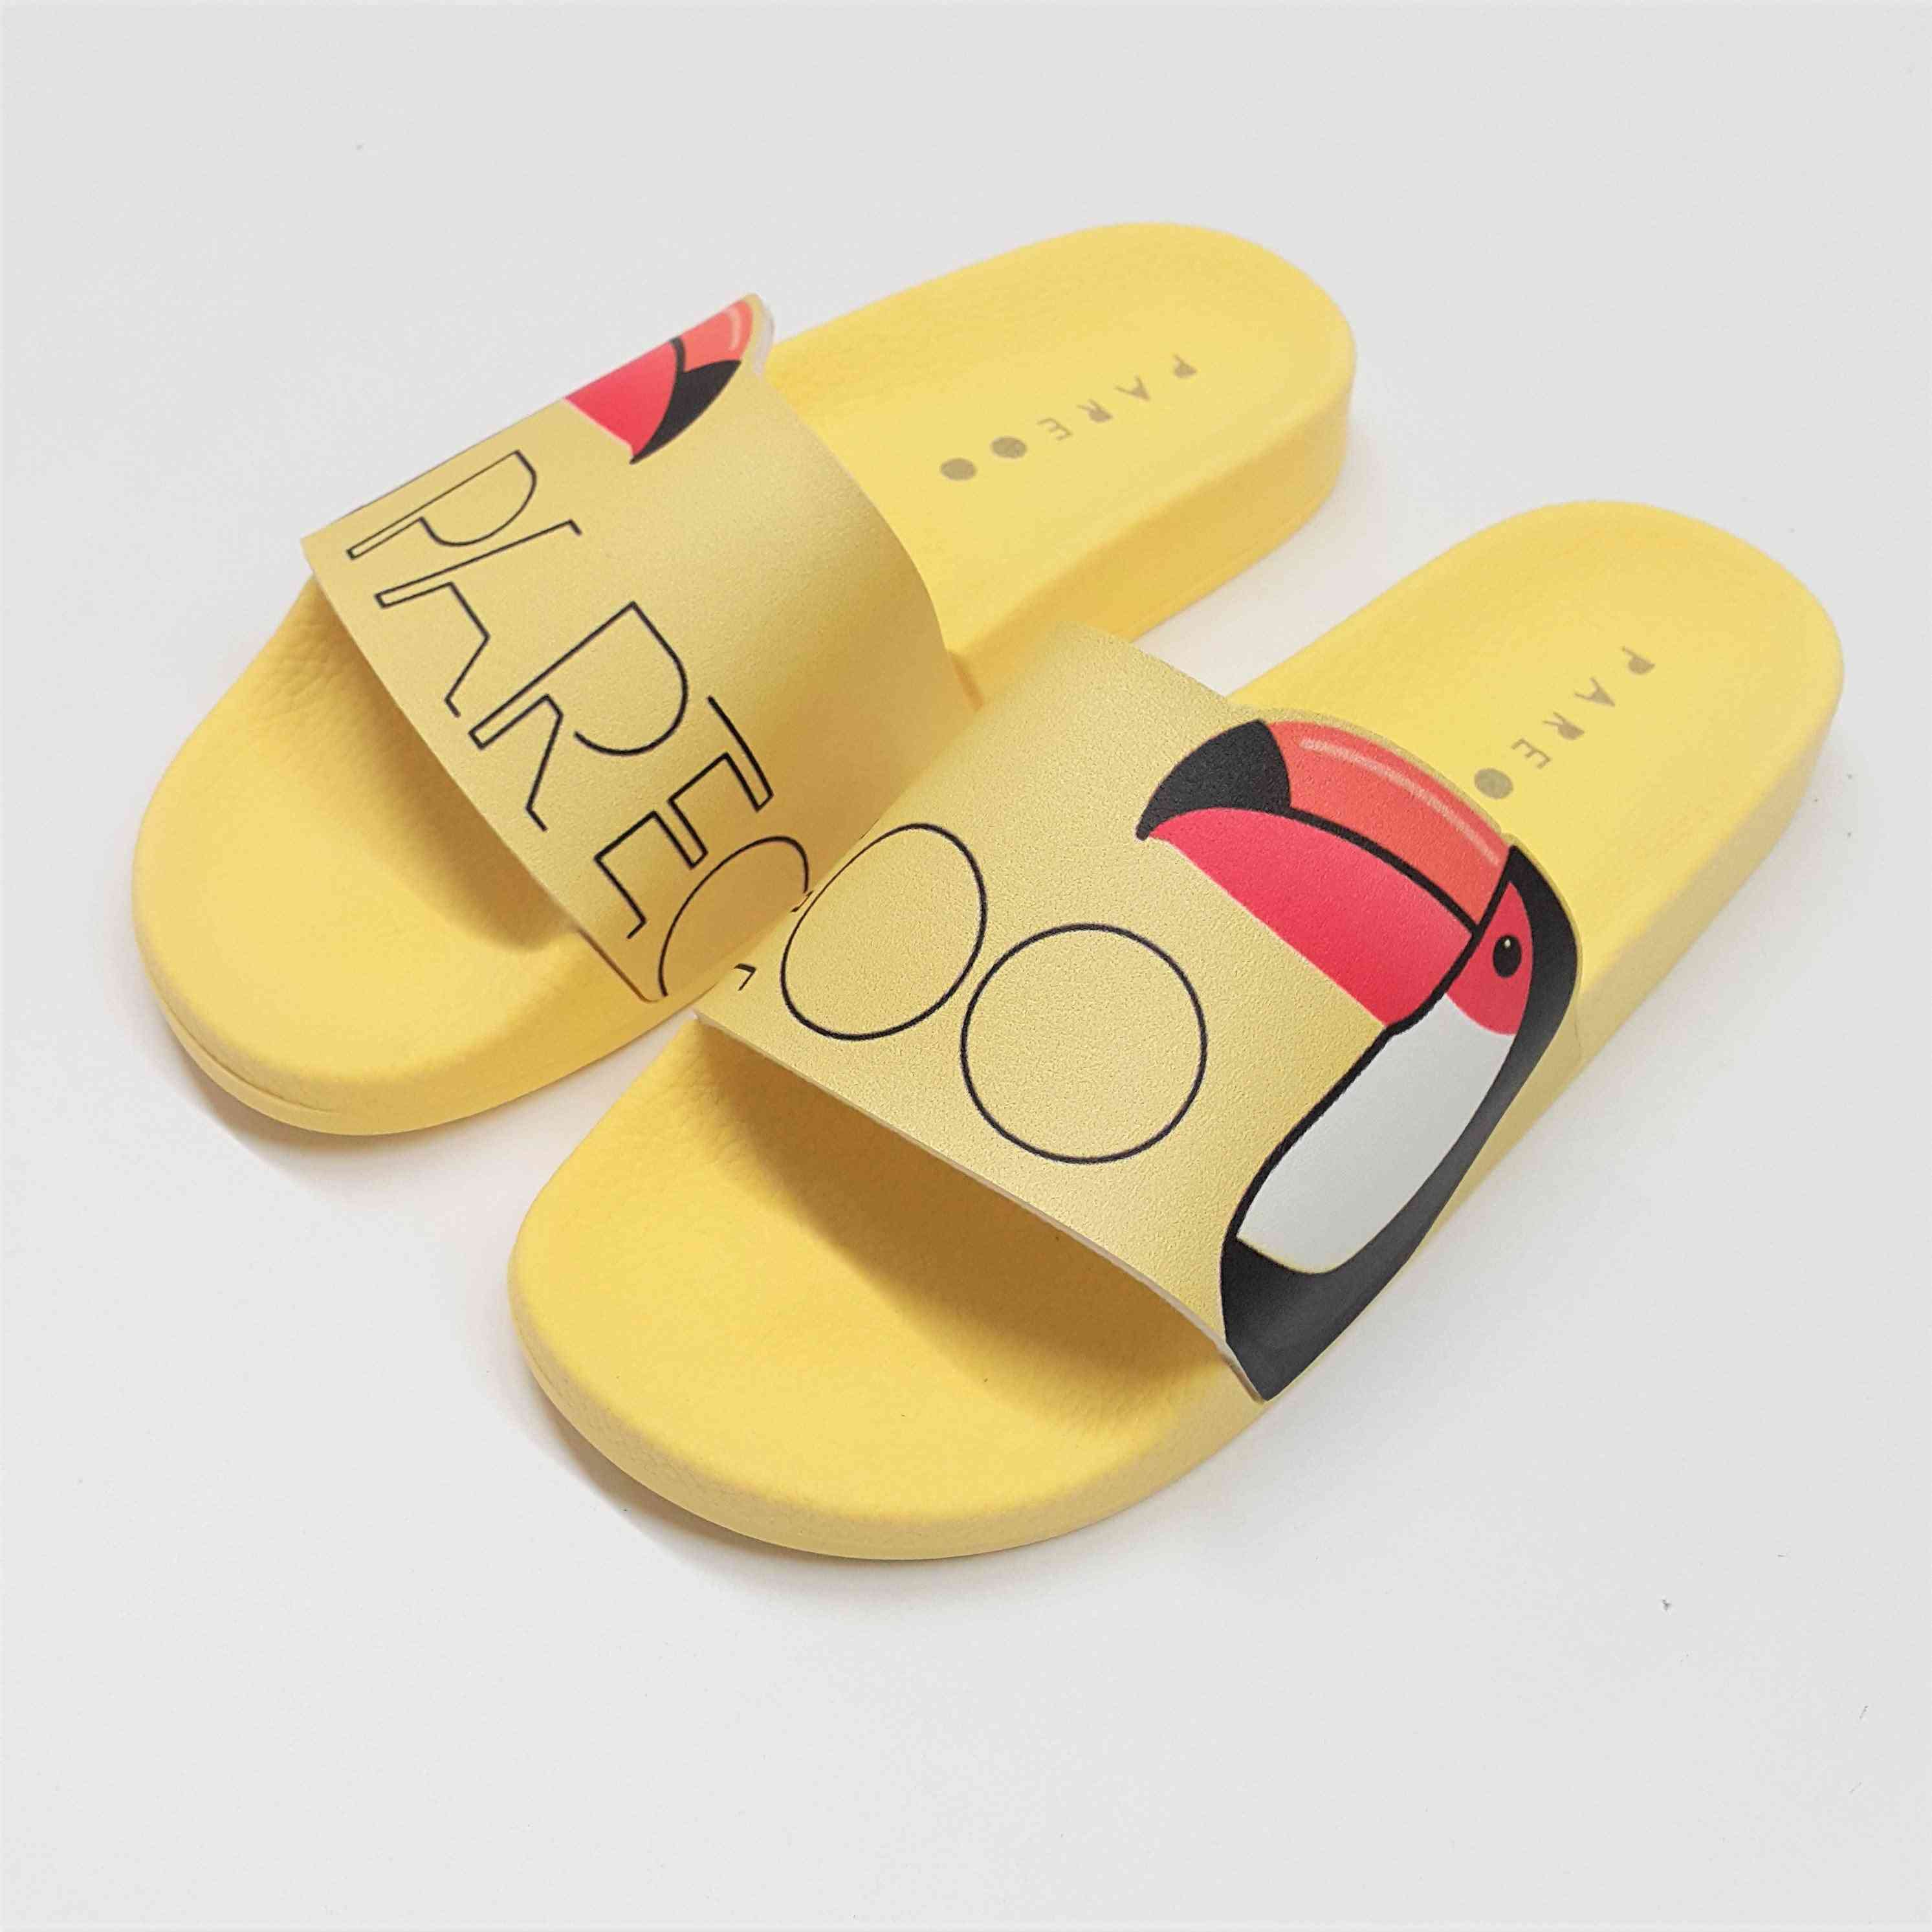 Rio Slides- Shoes Slipper